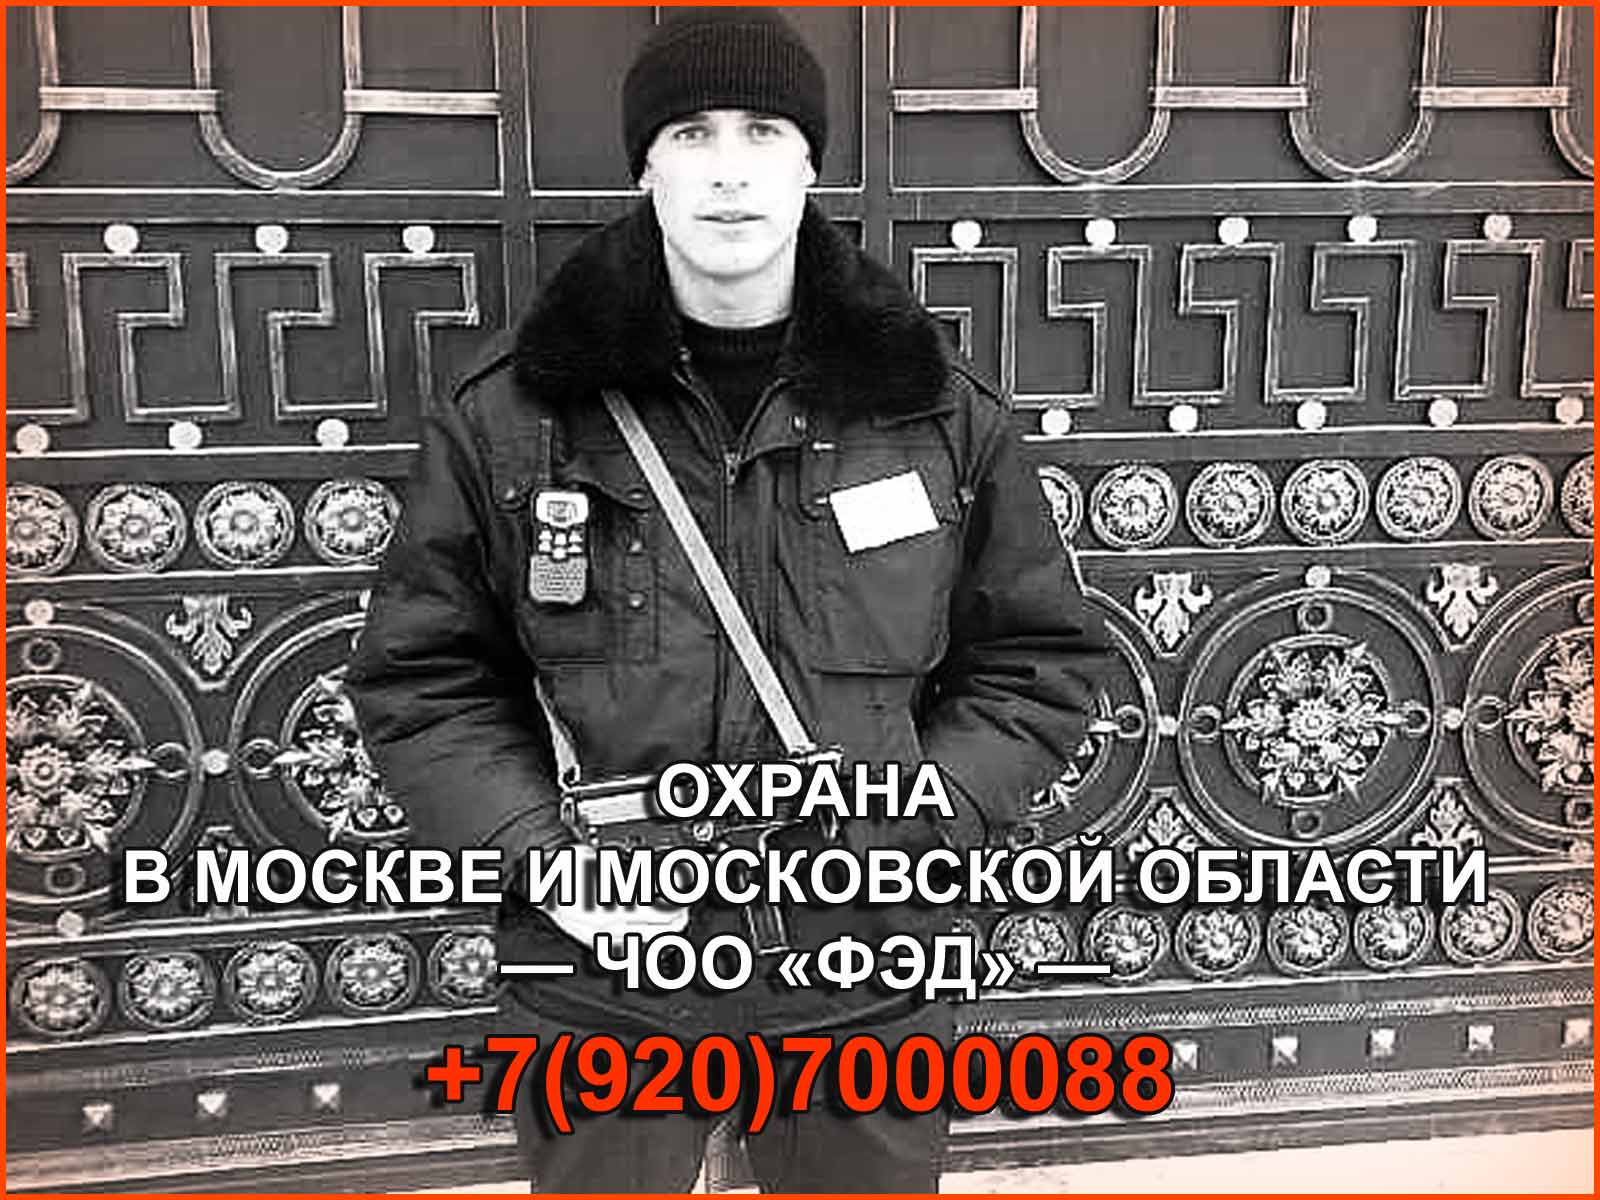 Охрана в Москве от ЧОО "ФЭД". Лучшие предложения на охранные услуги для наших клиентов.